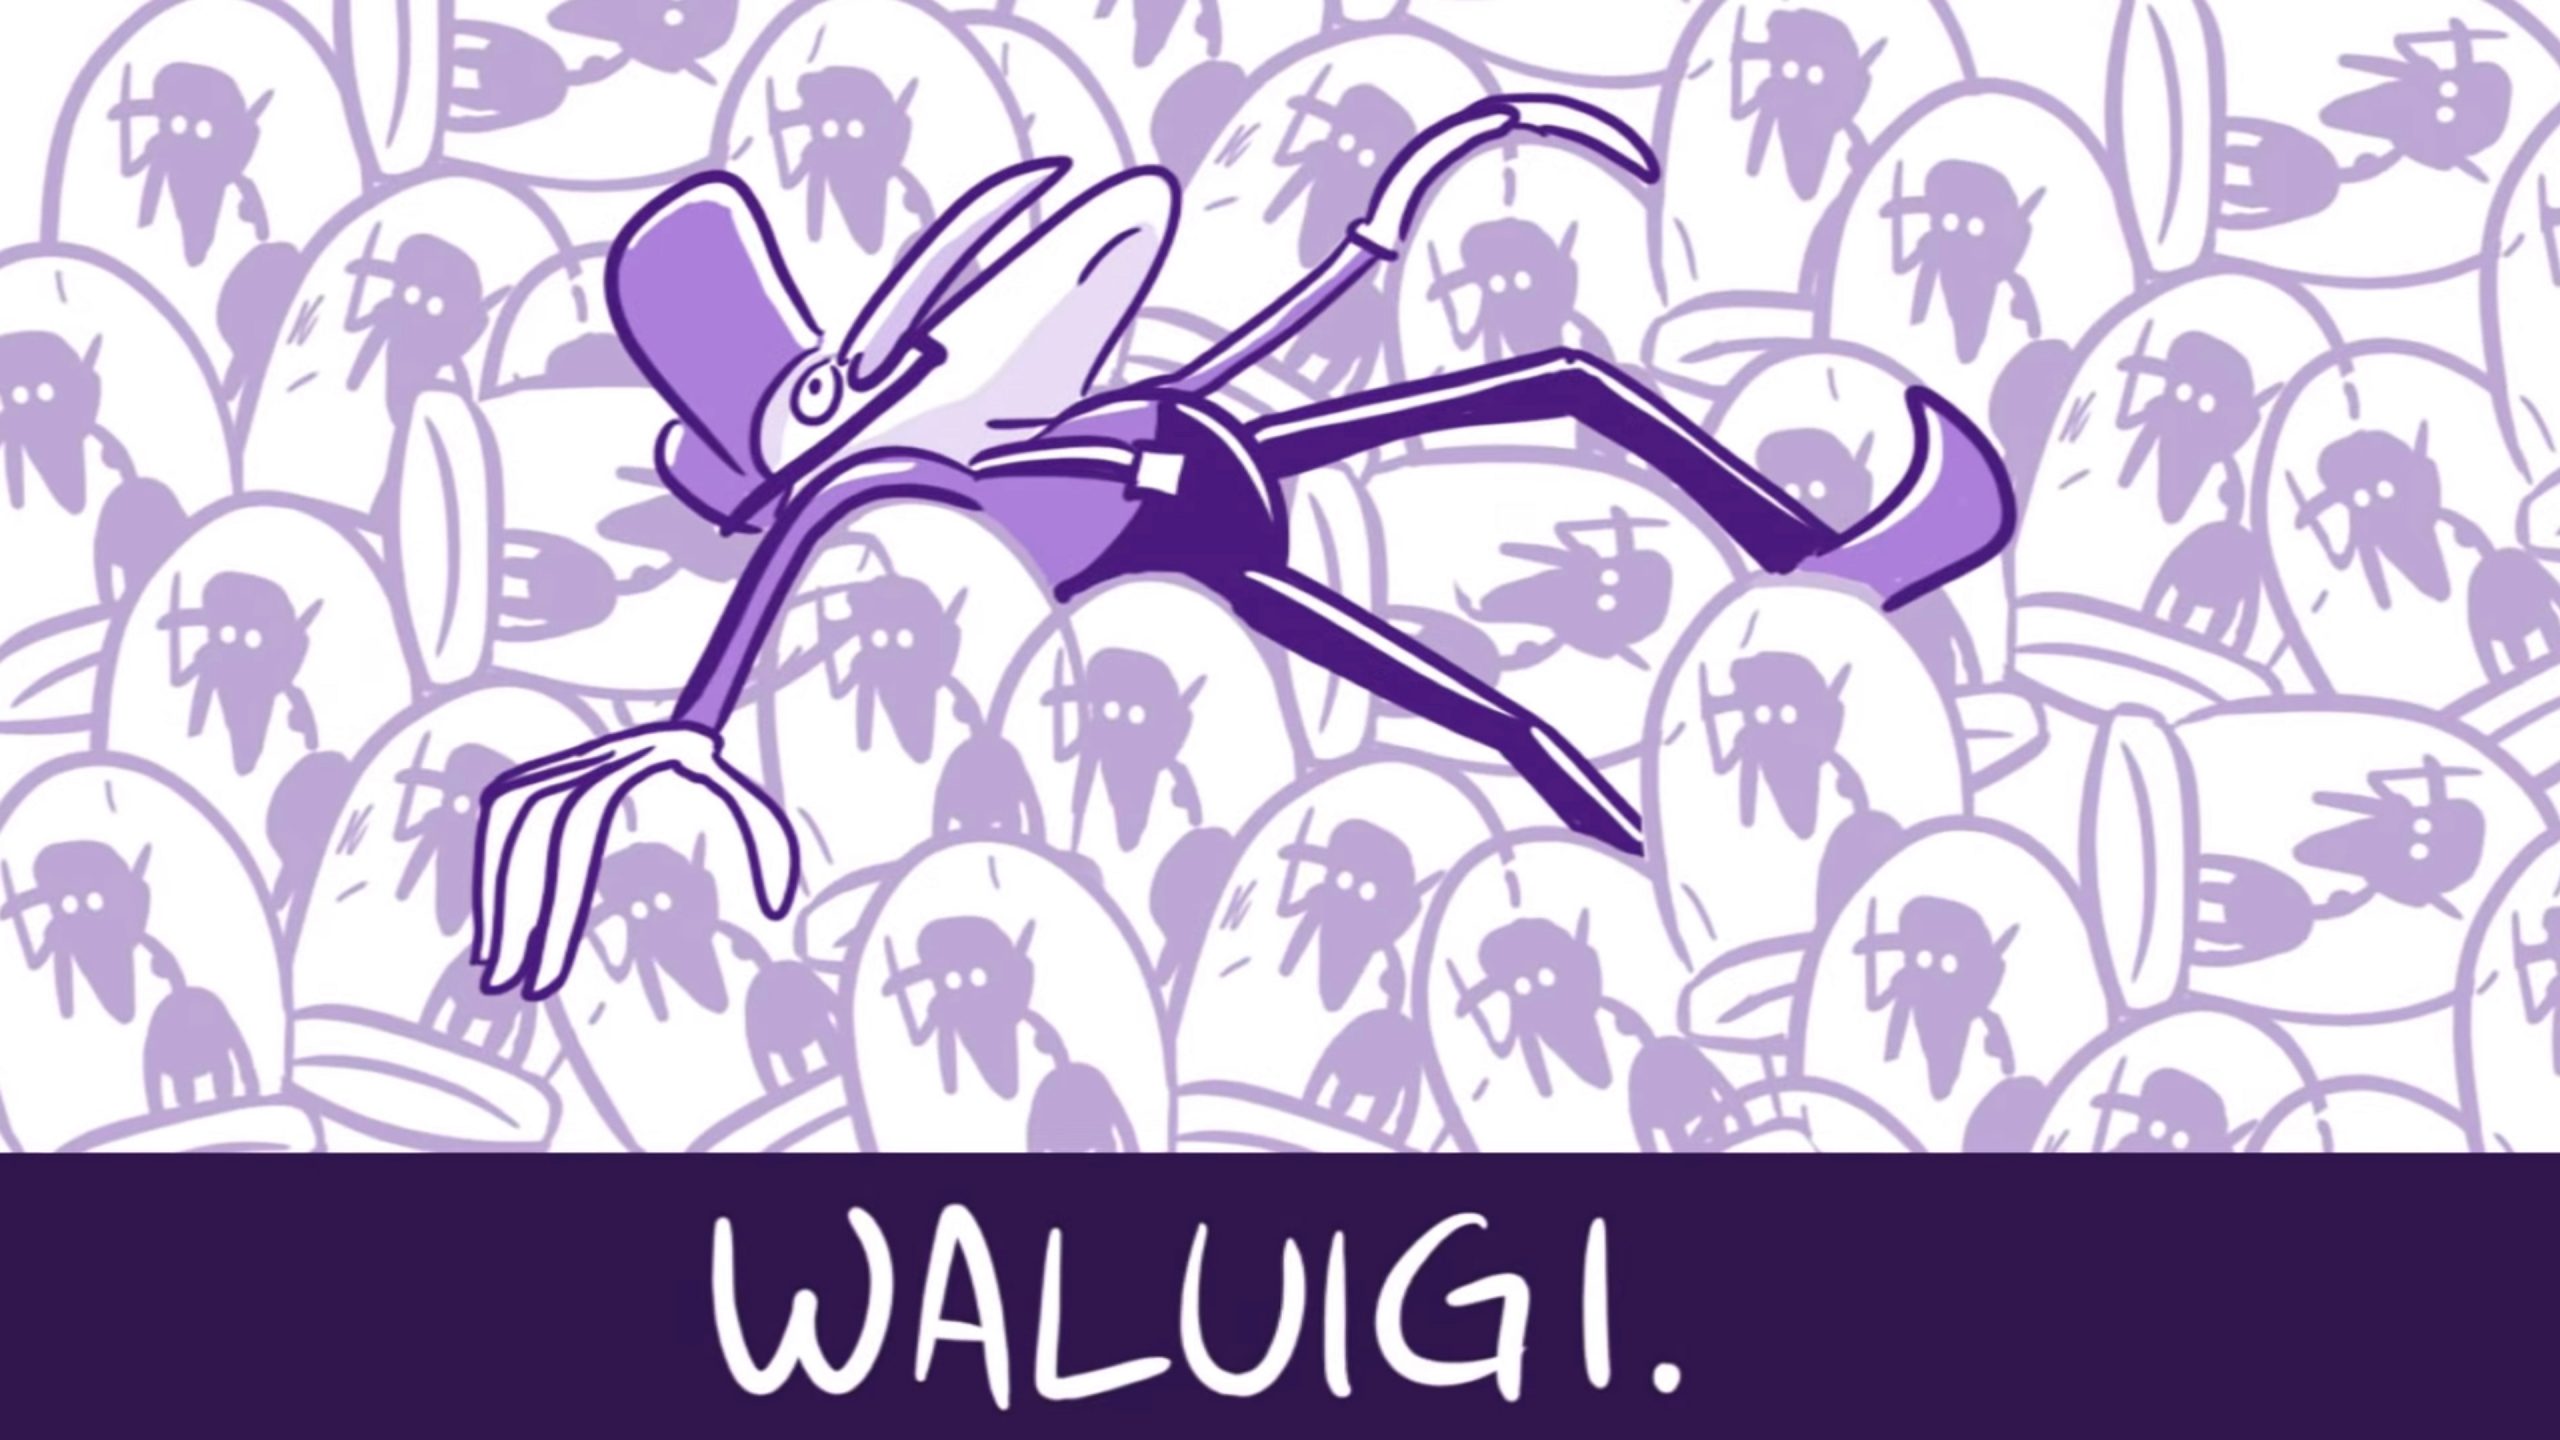 Nintendo opina sobre la inclusión de Waluigi en Super Smash Bros Ultimate.